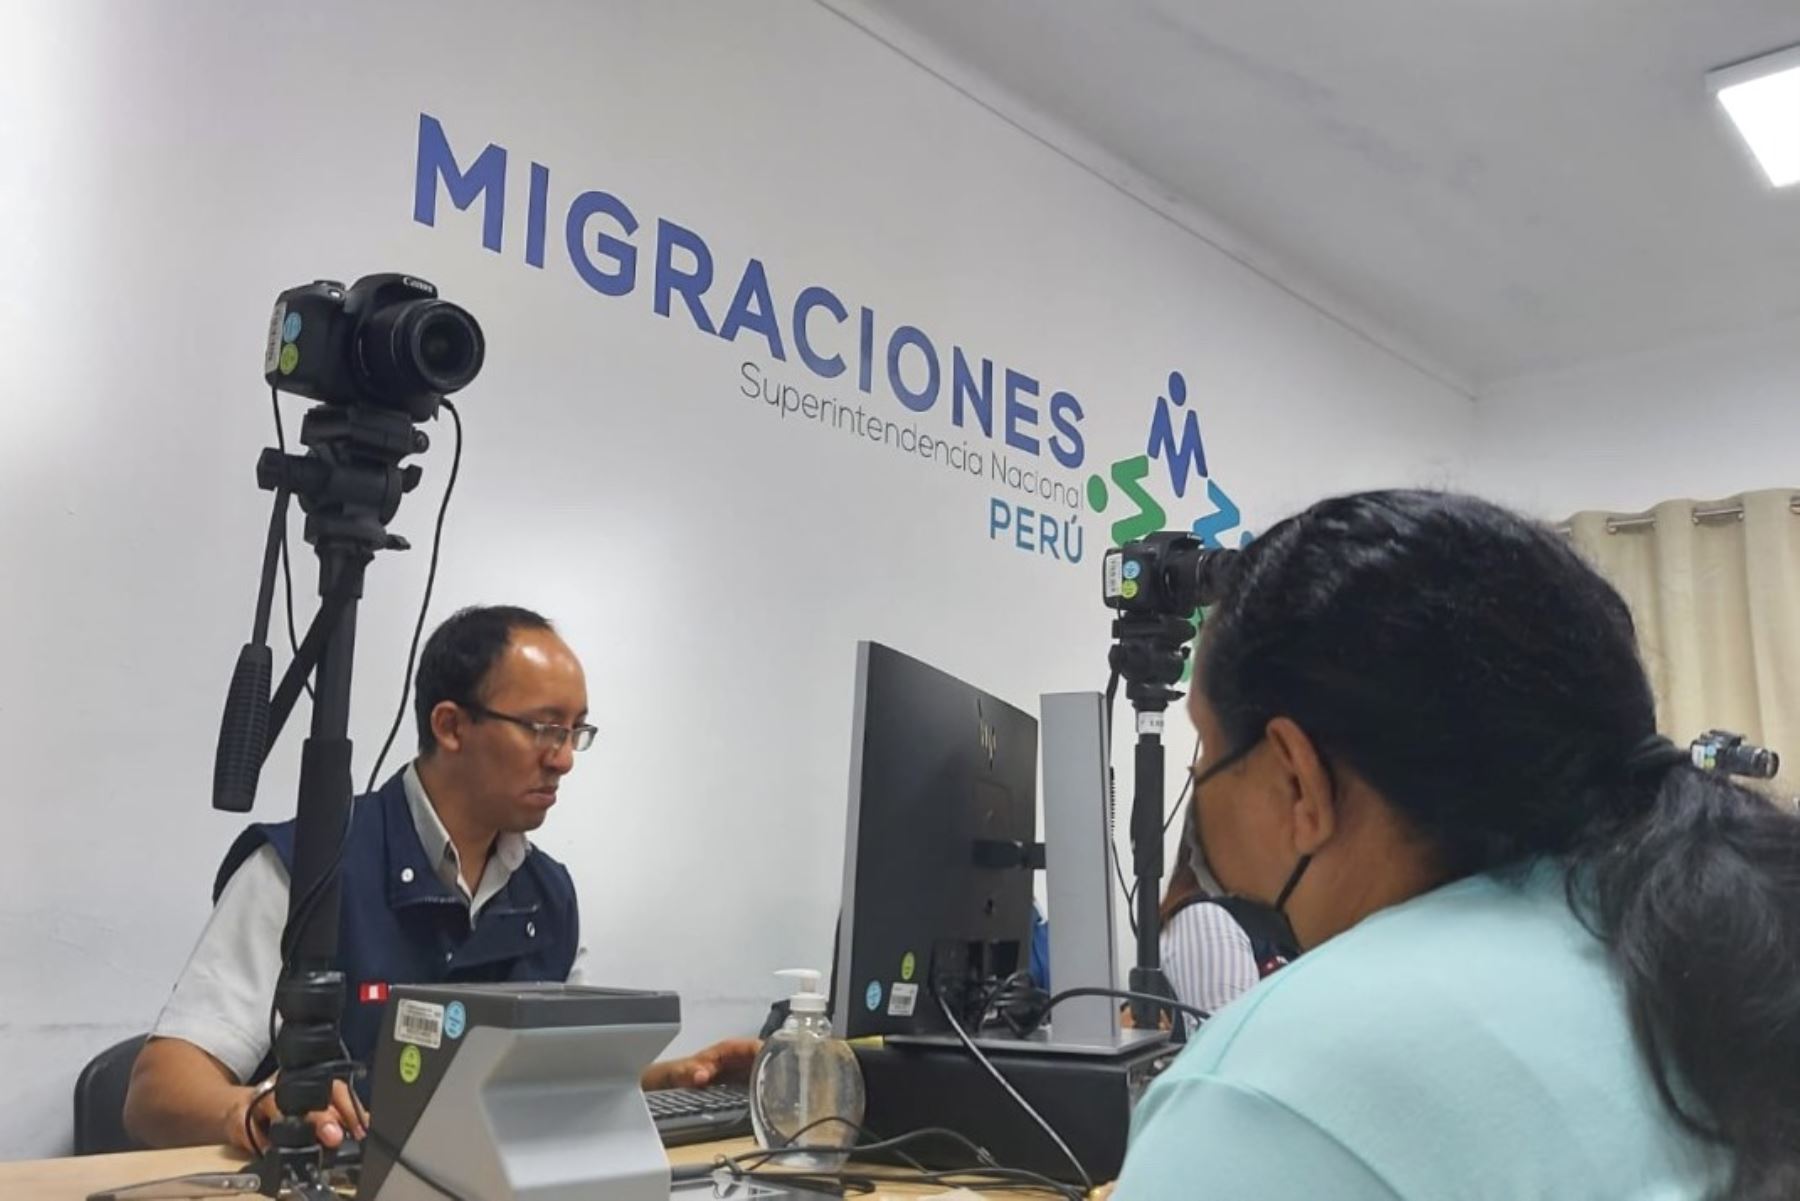 Migraciones atiende a extranjeros para regularizar su situación migratoria. Foto: ANDINA/Difusión.